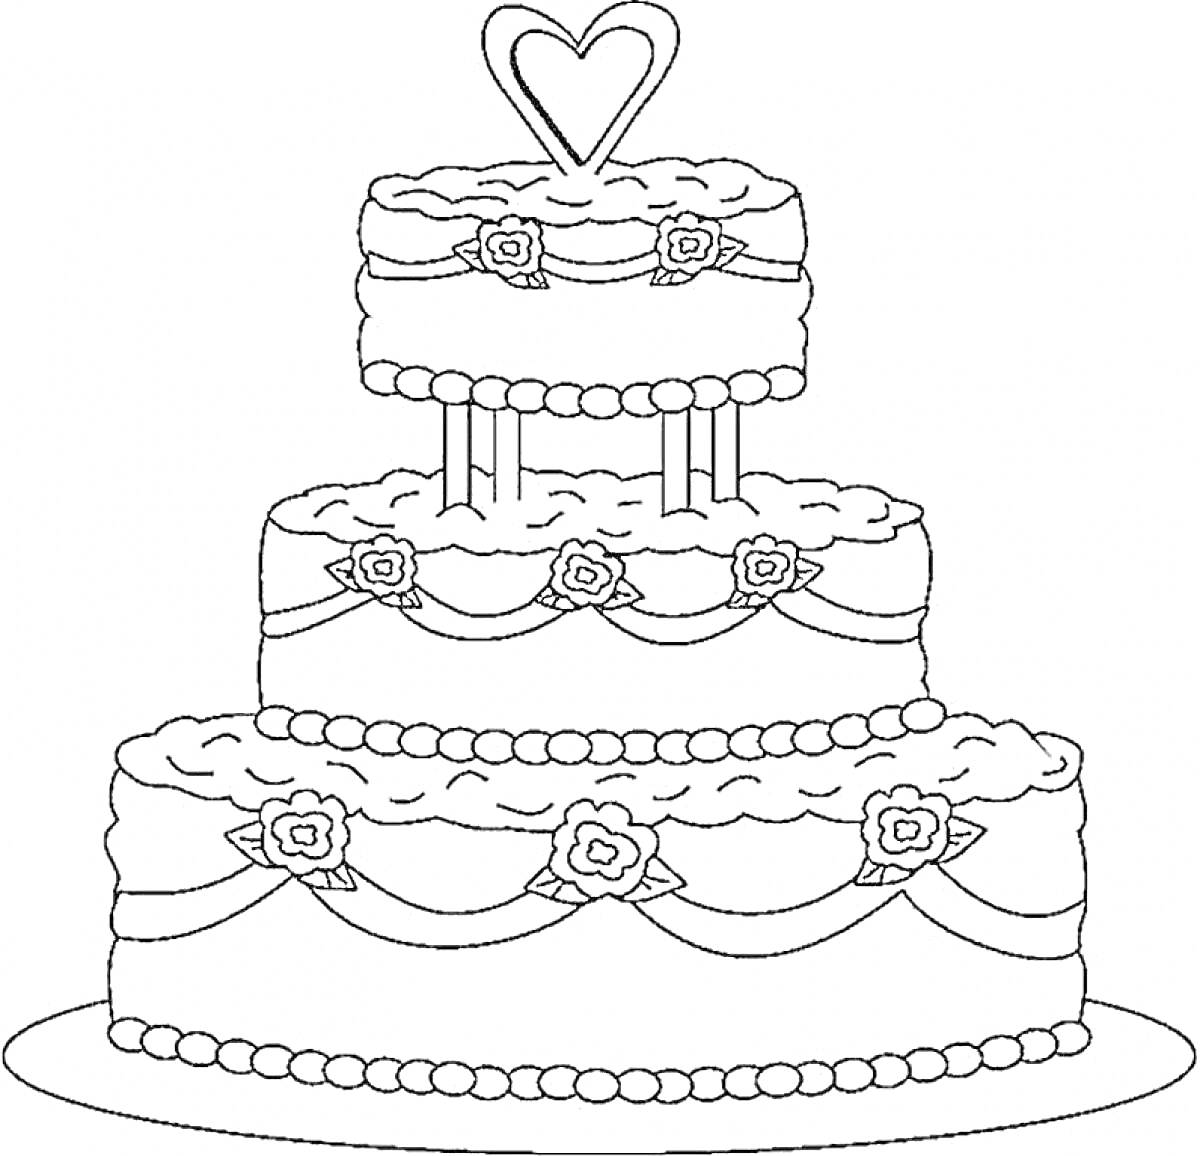 Трёхъярусный свадебный торт с сердечком и цветами на блюде